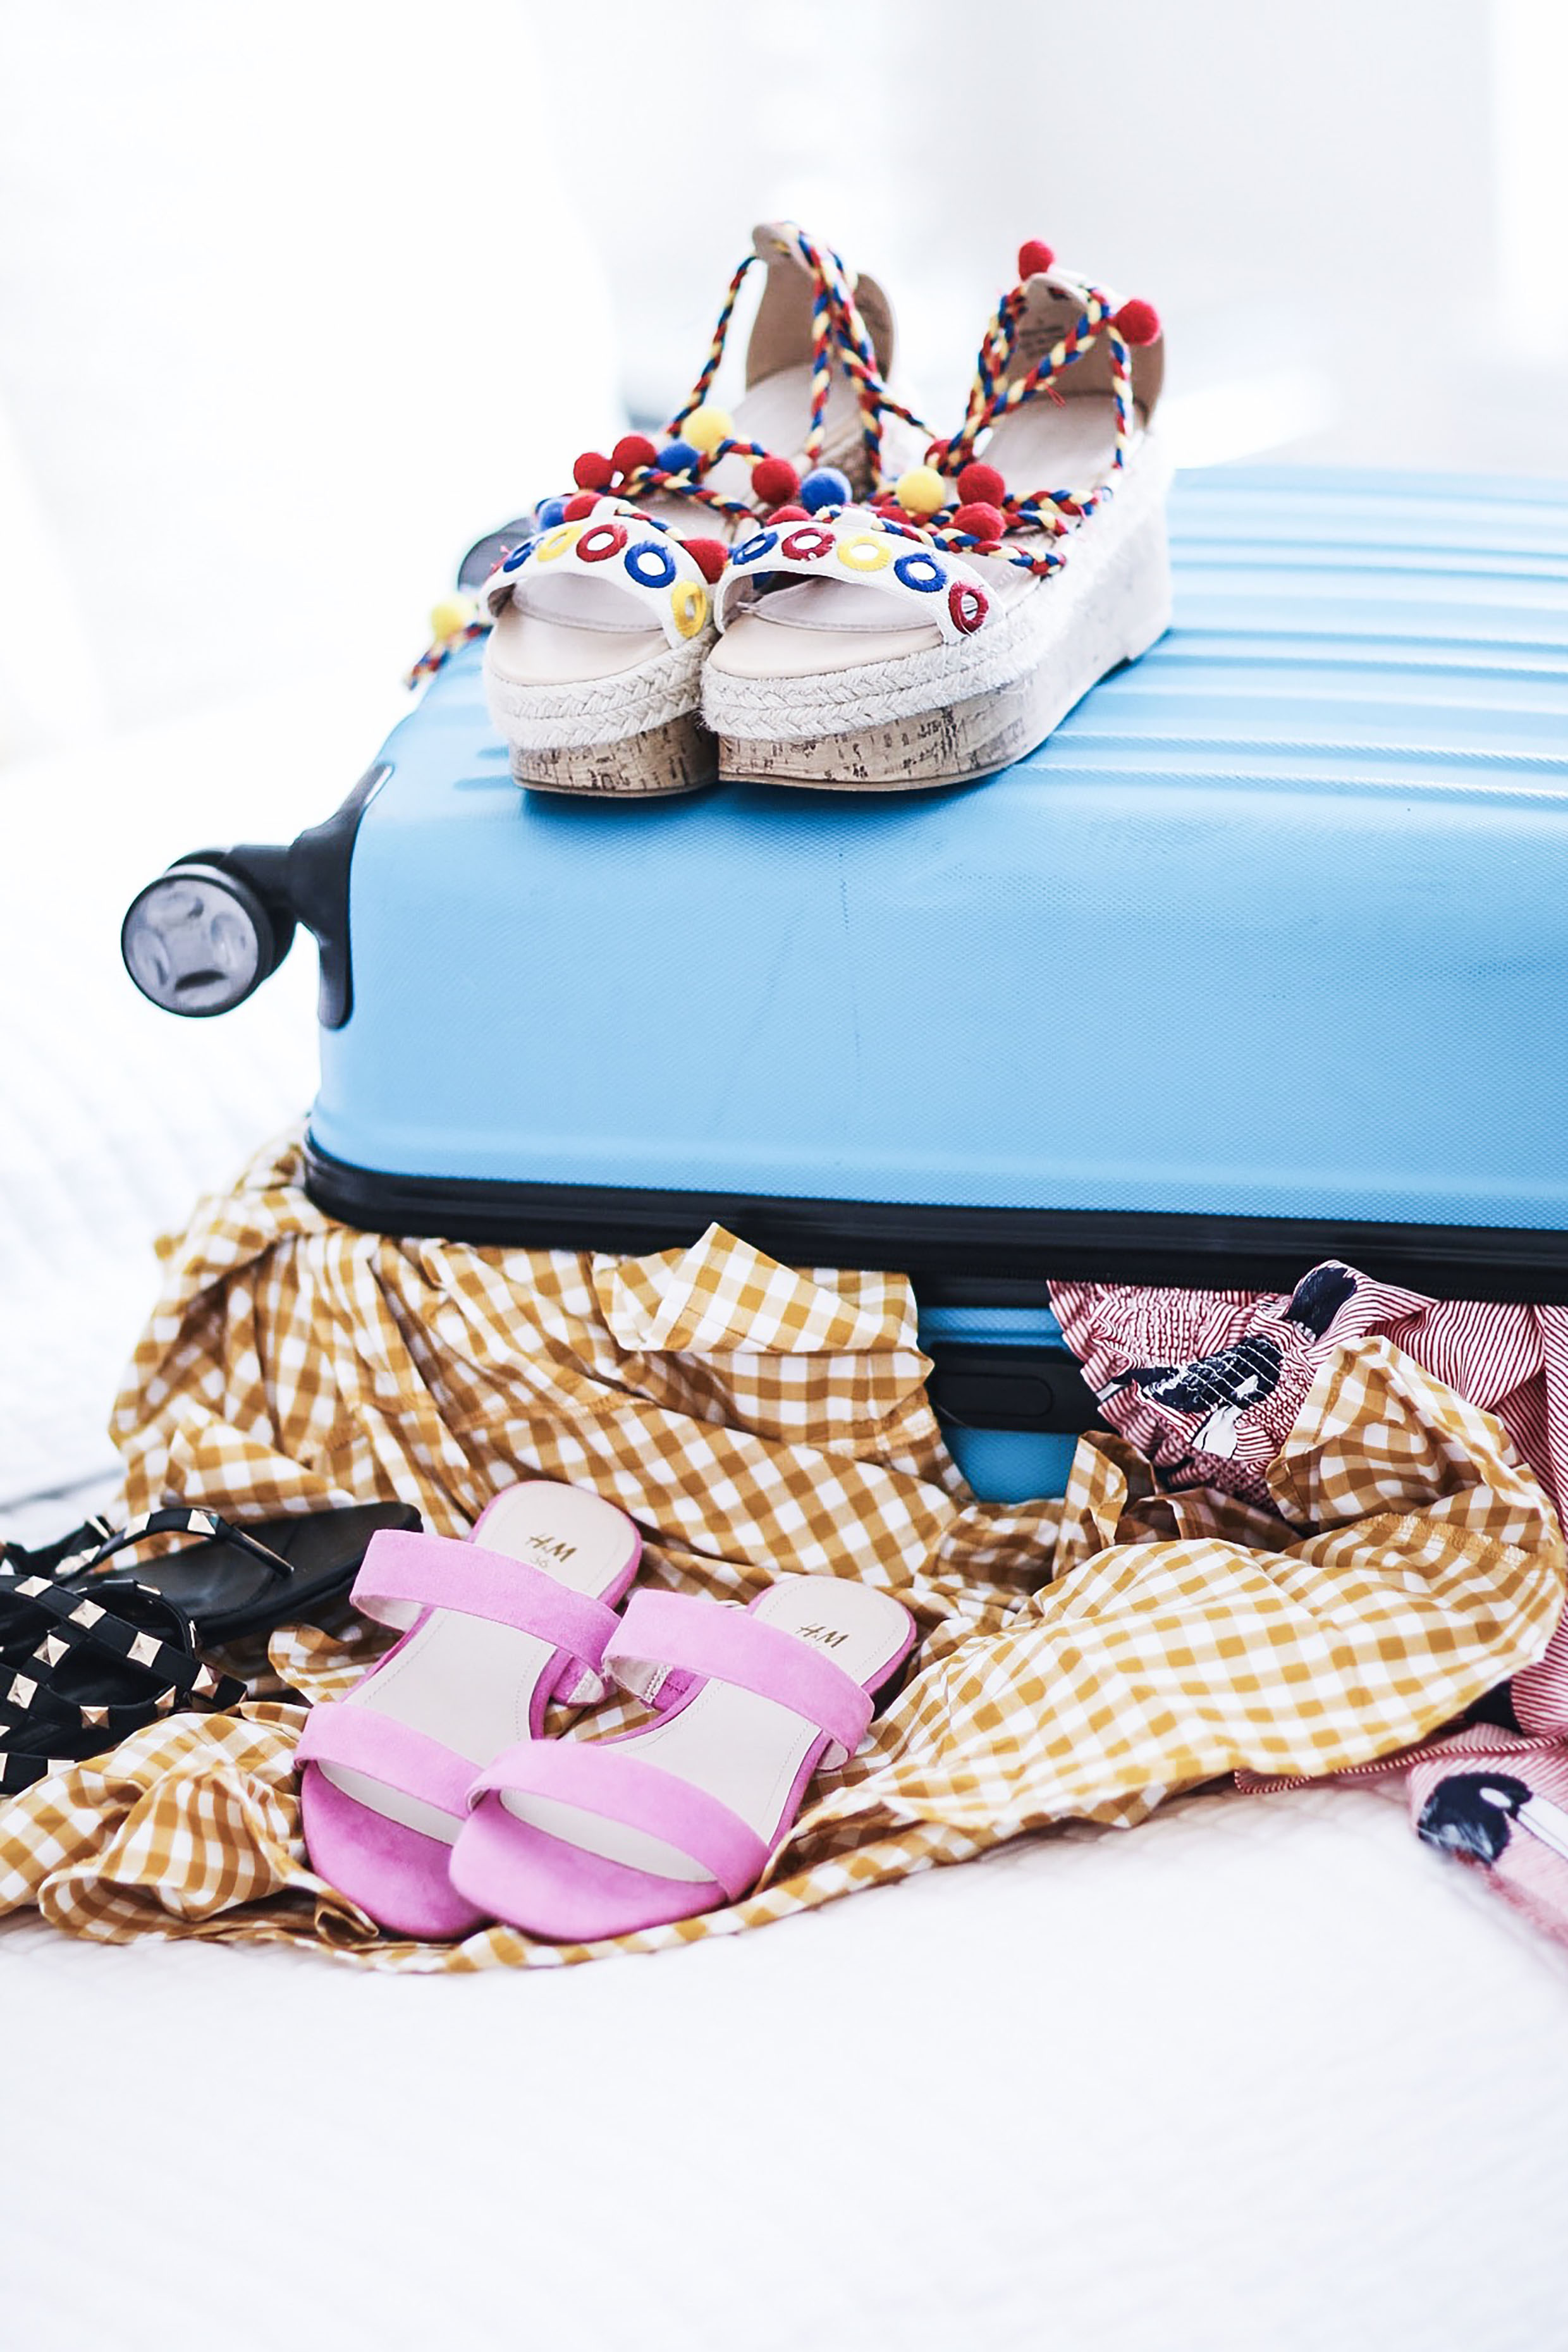 Alena Gidenko of modaprints.com shares how to pack for your next beach trip